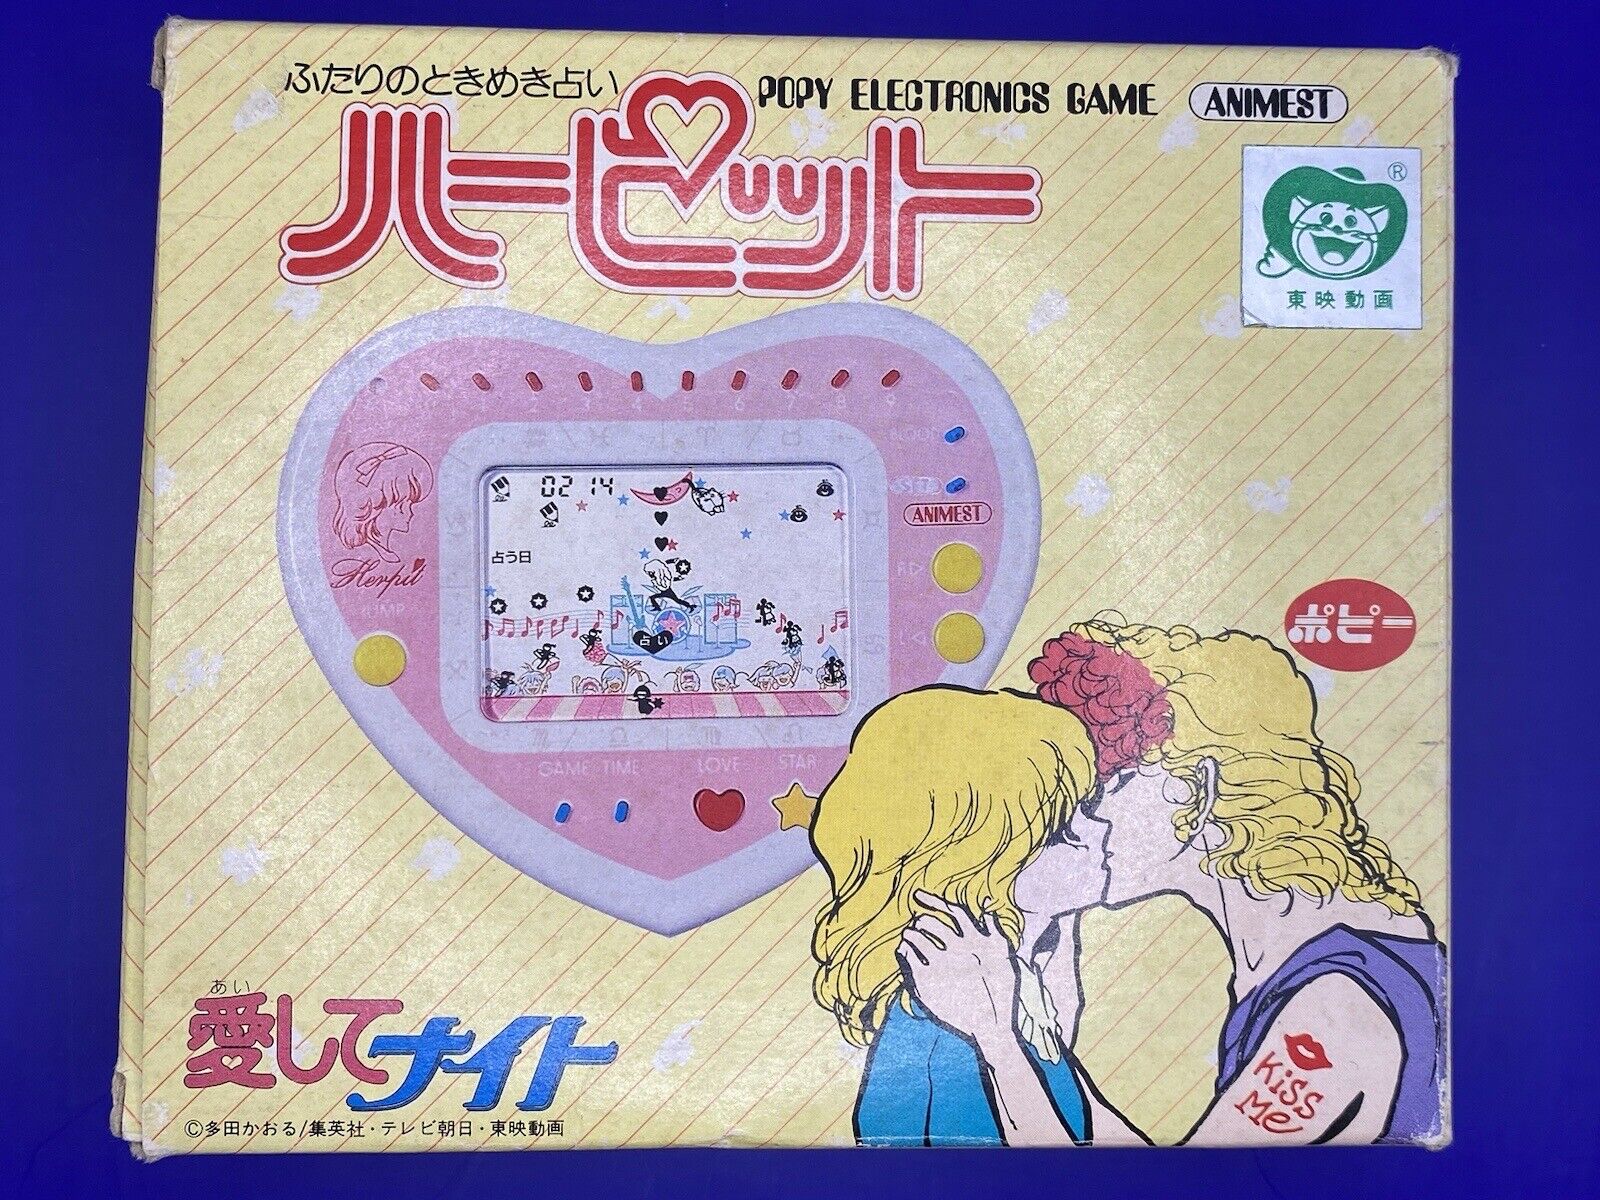 Bandai Aishite Naito Love Me My Knight Herpit LCD Handheld Game Valentine